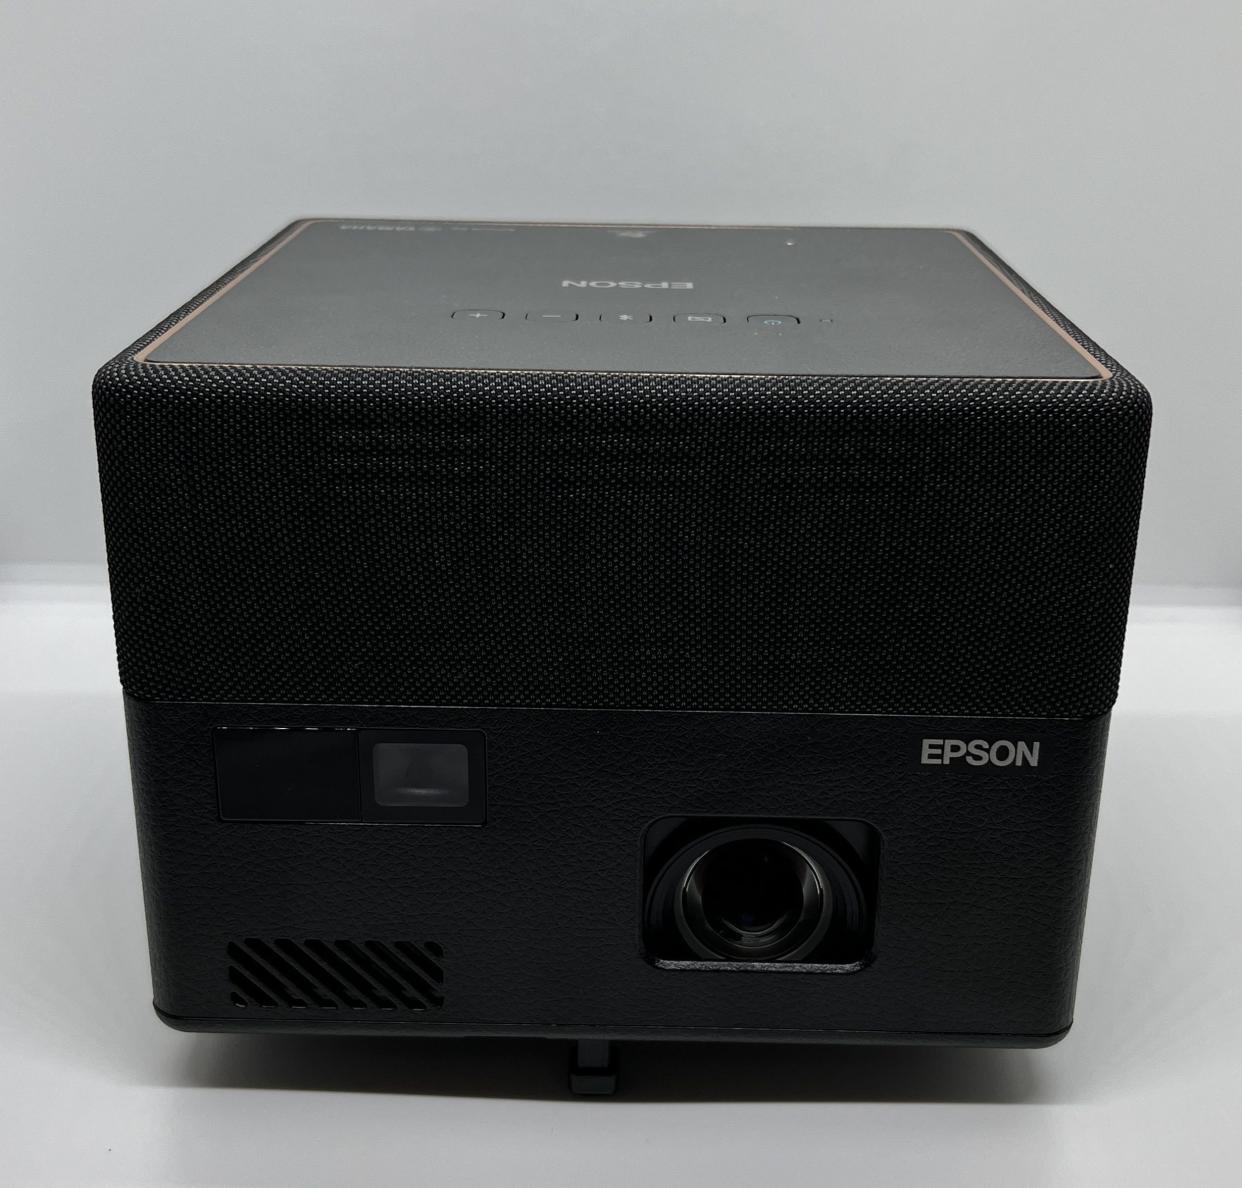 Epson-Epiqvision-EF12 Best Portable Projectors